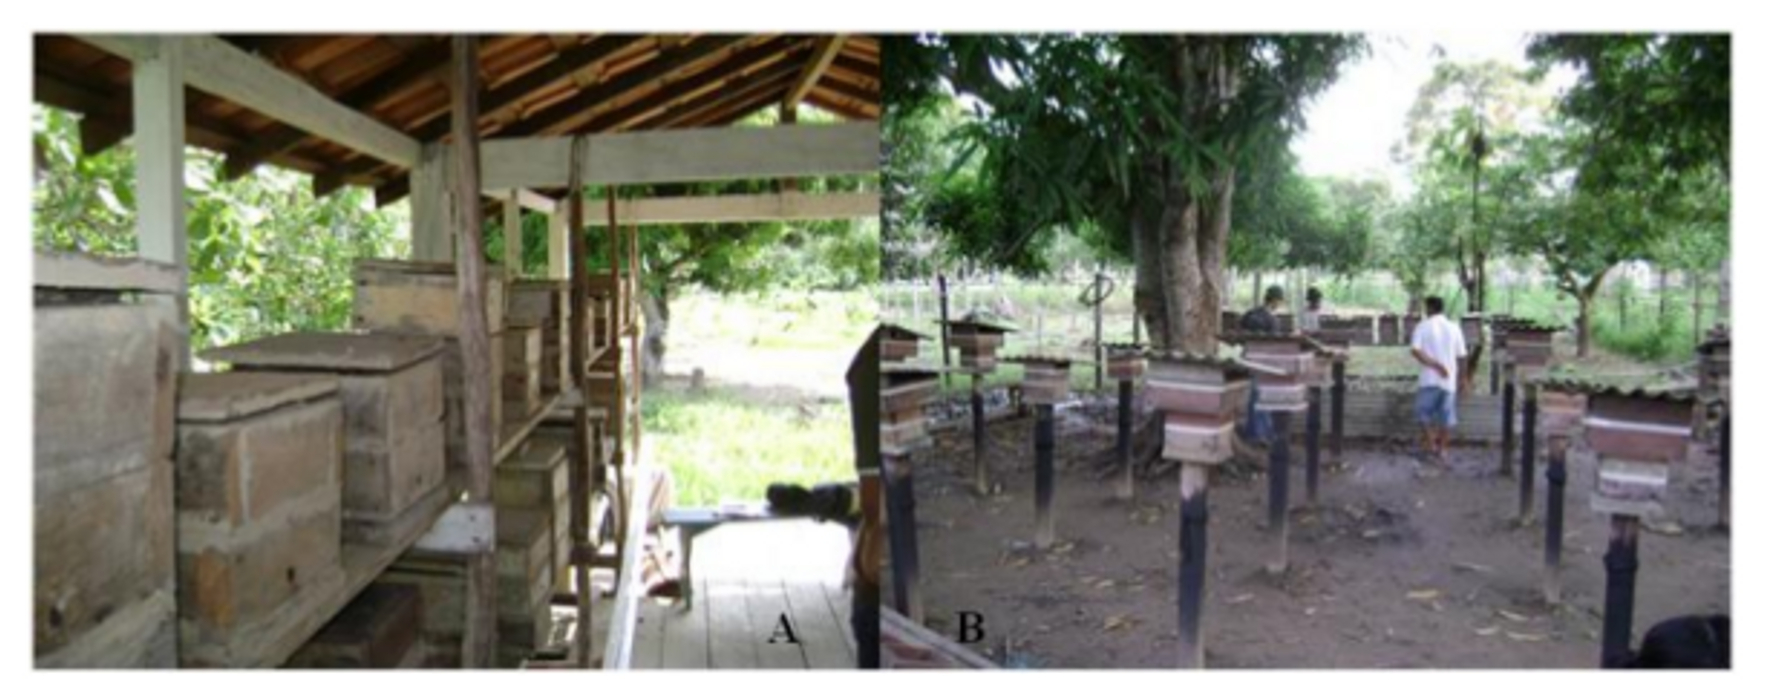 Meliponicultura em comunidades tradicionais equilíbrio dos ecossistemas.